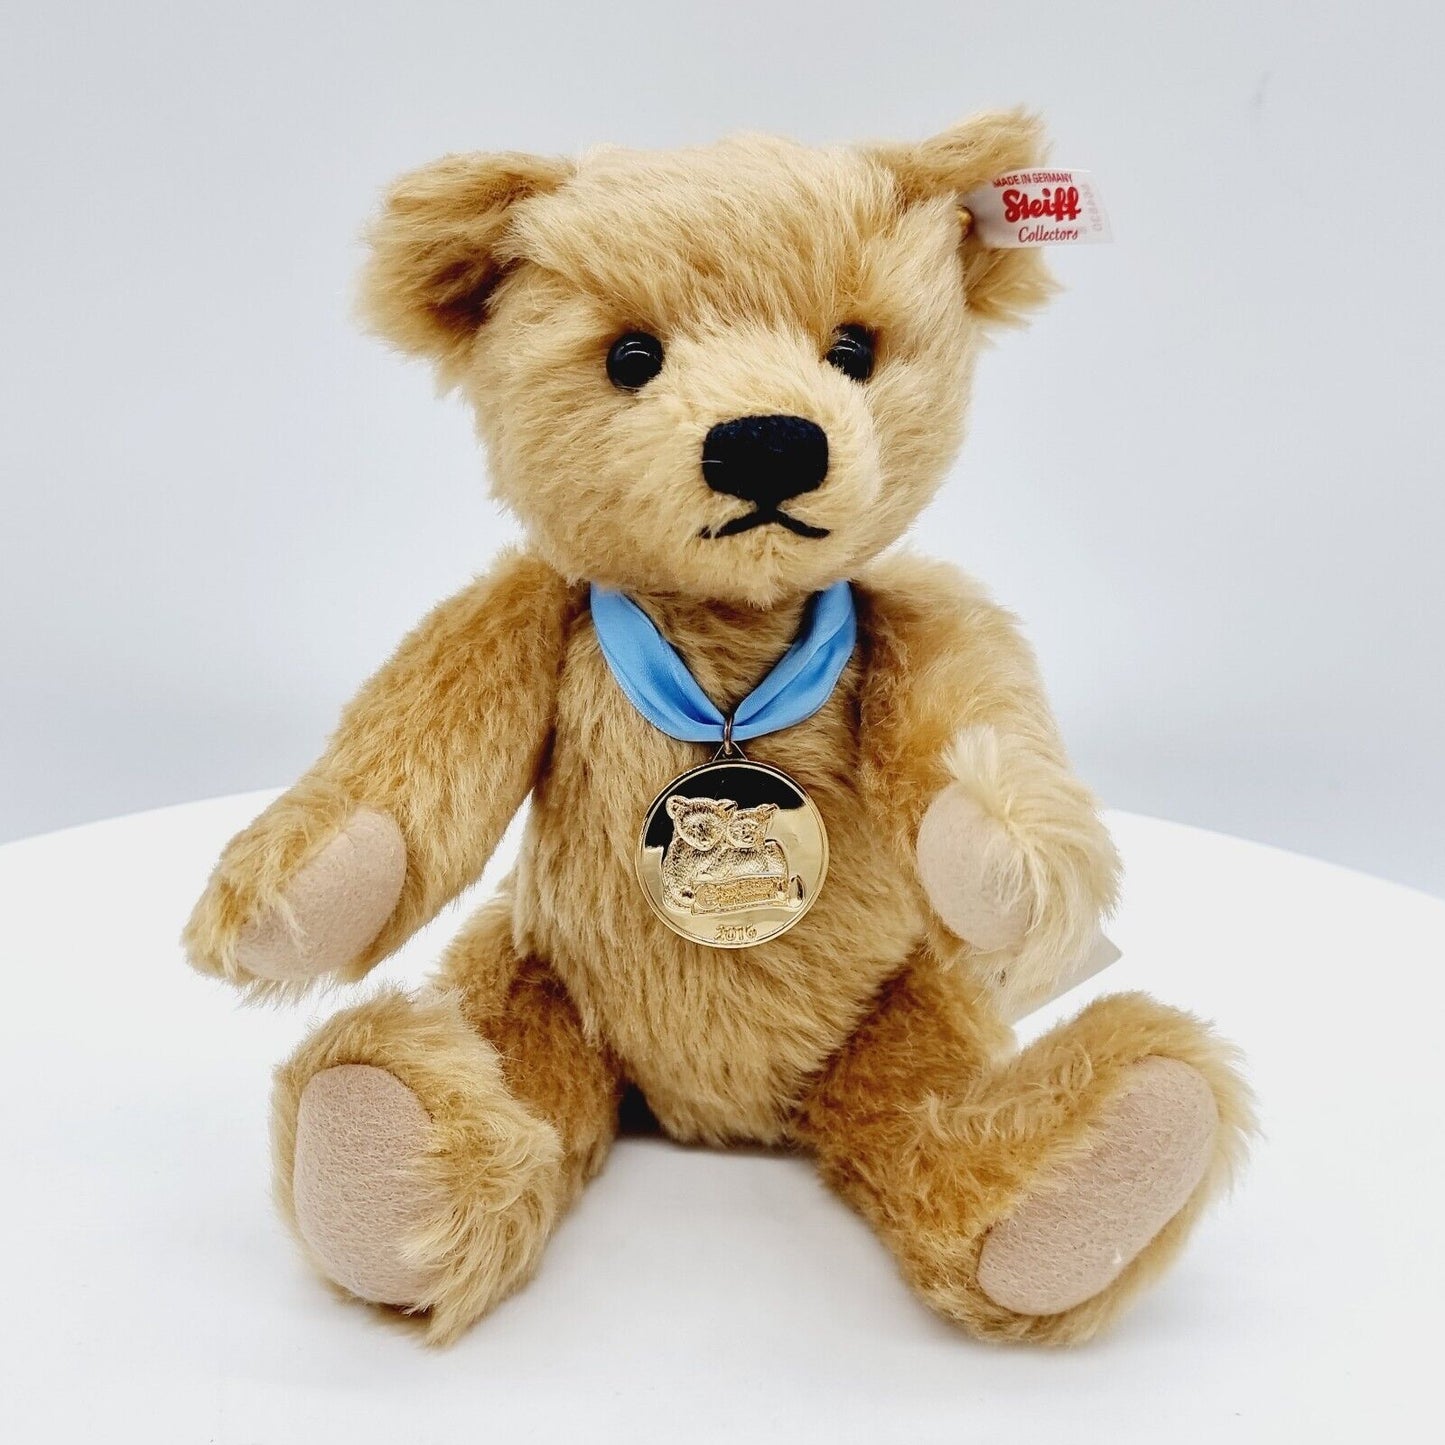 Steiff Danbury Mint 664830 Teddybär Year Bear 2016 limitiert 2016 28 cm Mohair